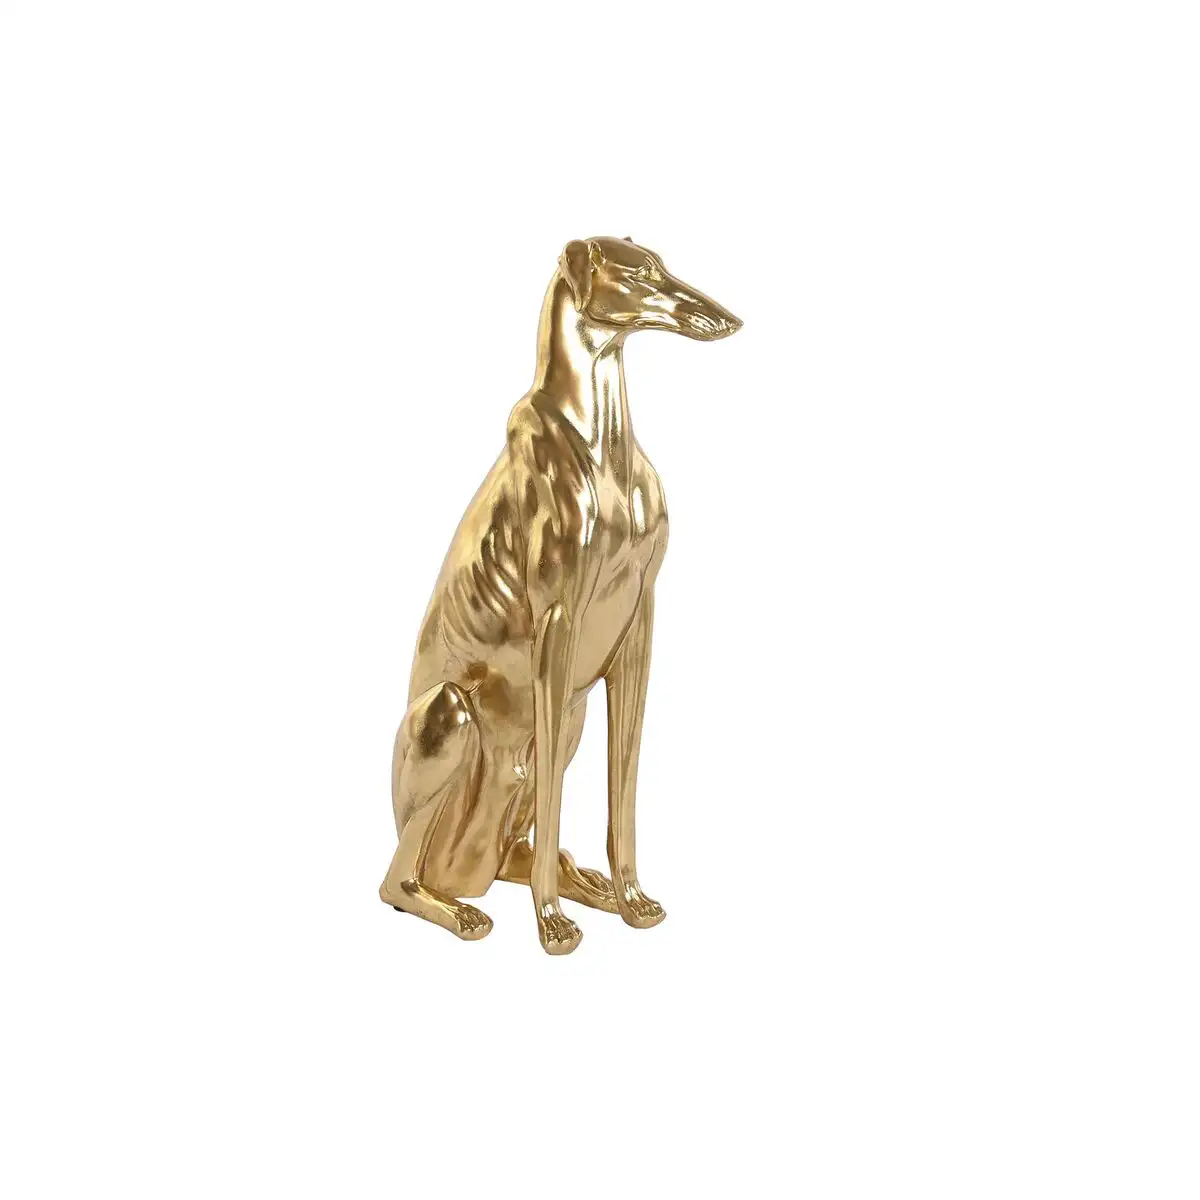 Figurine decorative dkd home decor dore resine chien 42 5 x 25 5 x 78 cm _5859. DIAYTAR SENEGAL - Votre Destination pour un Shopping Inégalé. Naviguez à travers notre sélection minutieuse pour trouver des produits qui répondent à tous vos besoins.